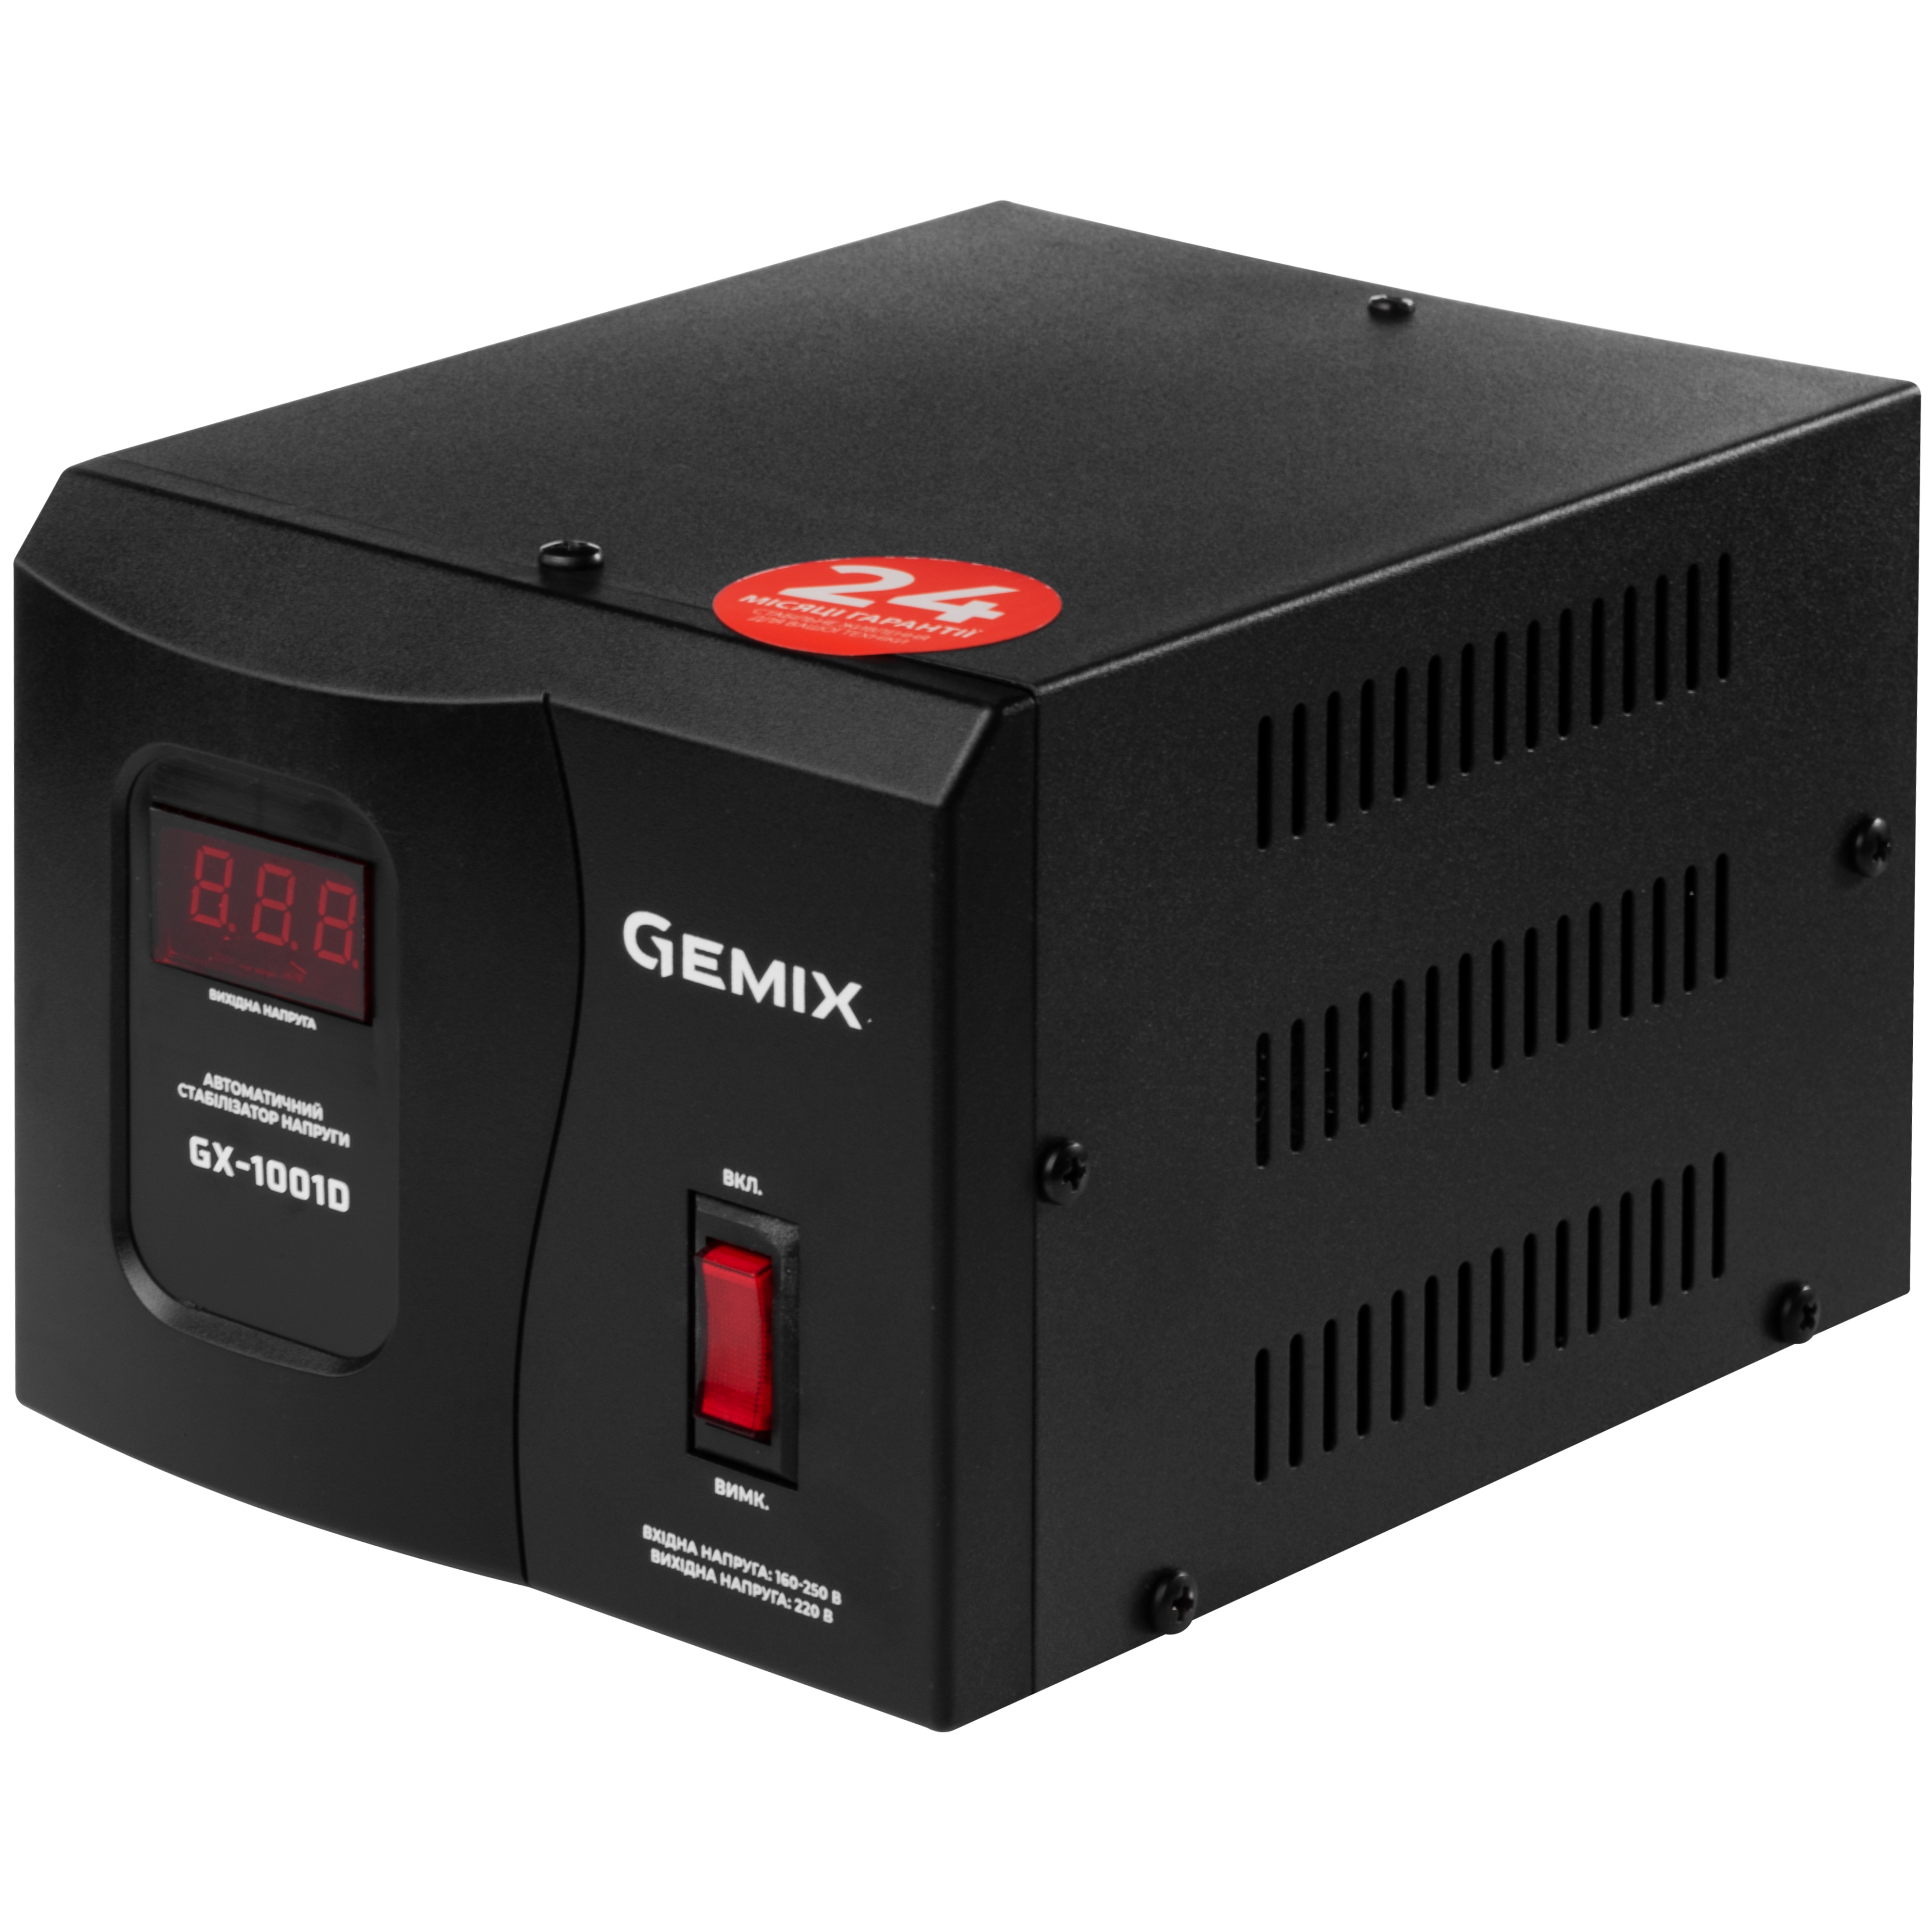 Характеристики бытовой стабилизатор Gemix GX-1001D